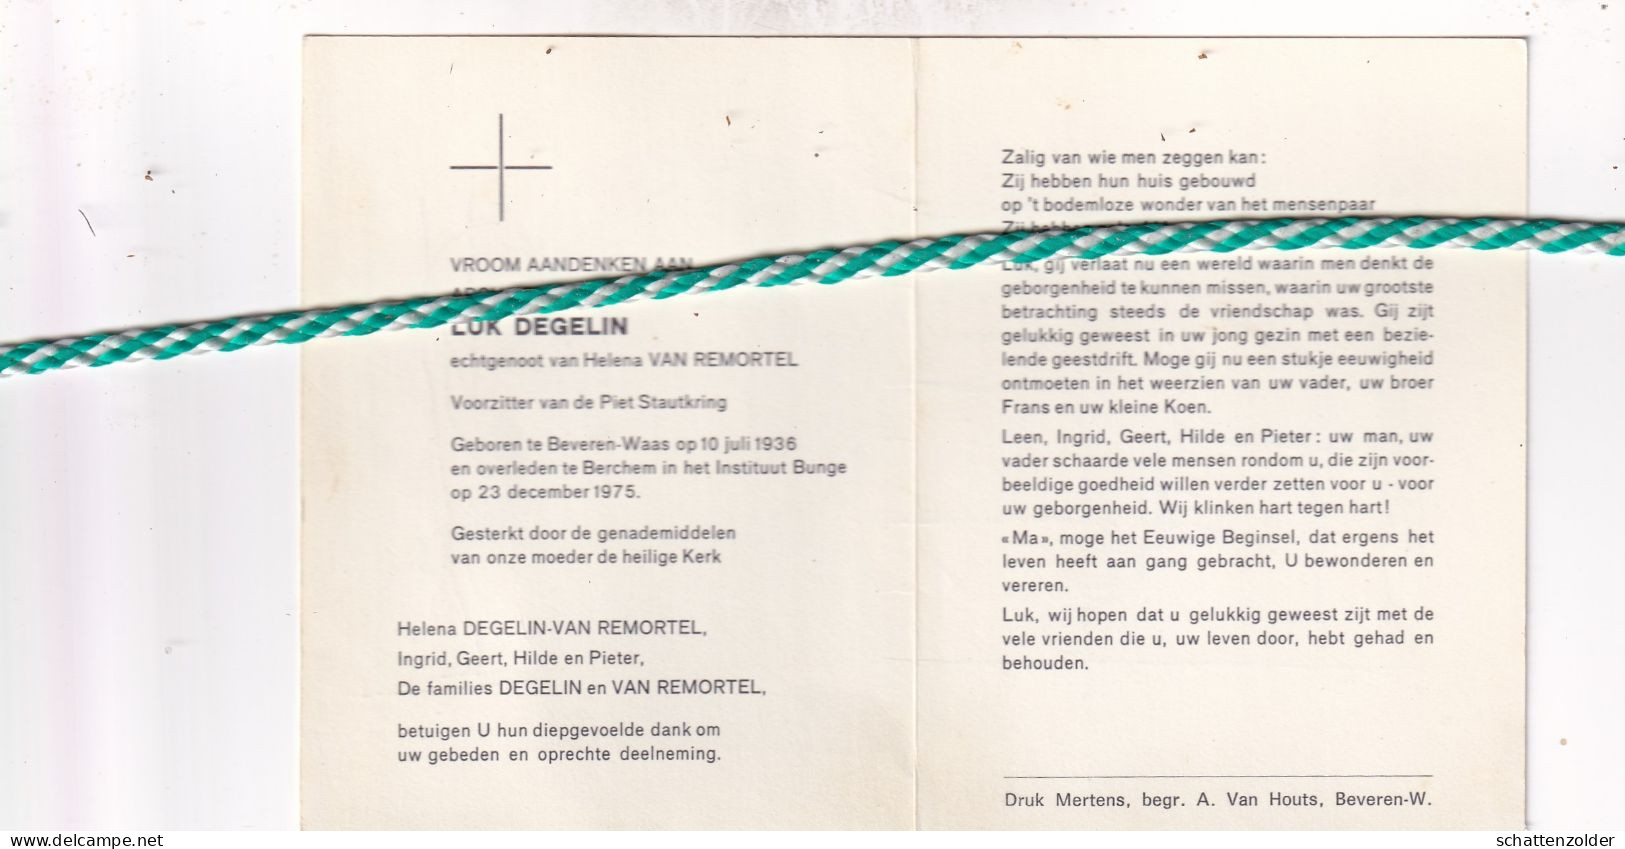 Luk Degelin-Van Remortel, Beveren-Waas 1936, Berchem 1975. Voorzitter Piet Stautkring. Foto - Todesanzeige